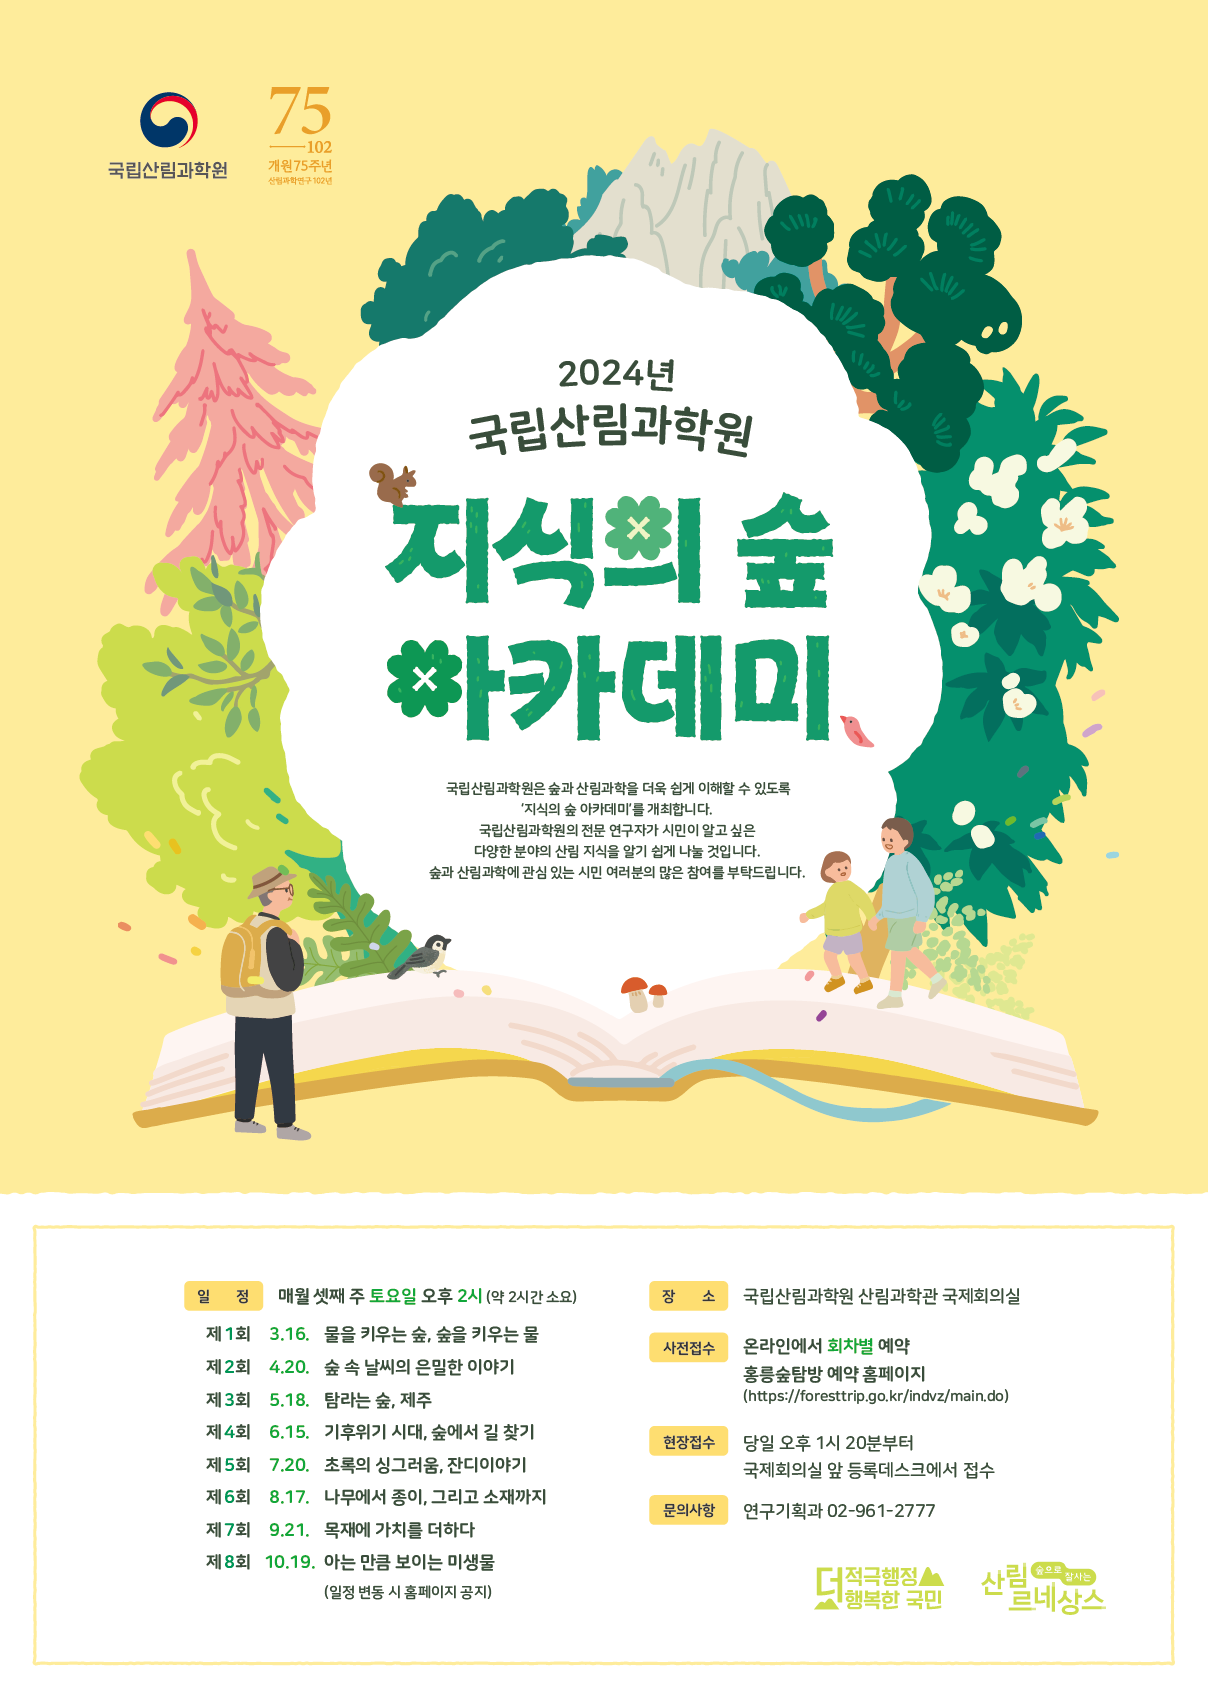 국립산림과학원이 진행할 '지식의 숲 아카데미' 포스터 (국립산림과학원 제공)